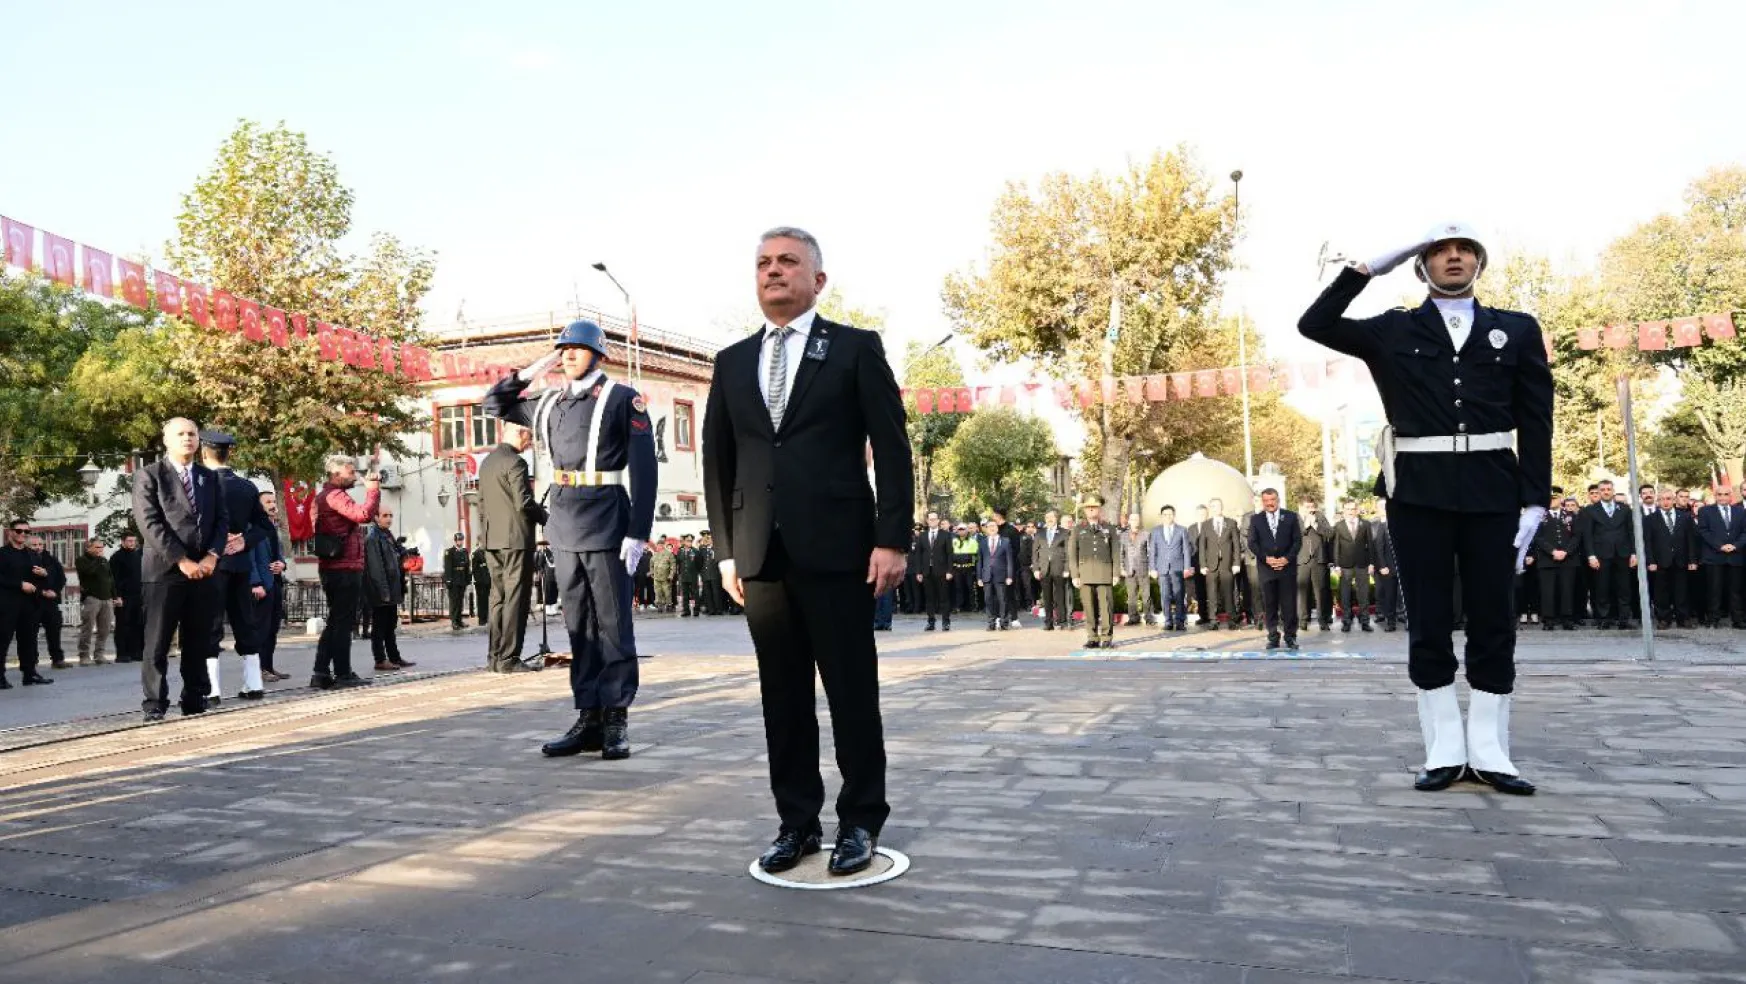 Büyük Önder Mustafa Kemal Atatürk, Malatya'da Düzenlenen Törenle Anıldı